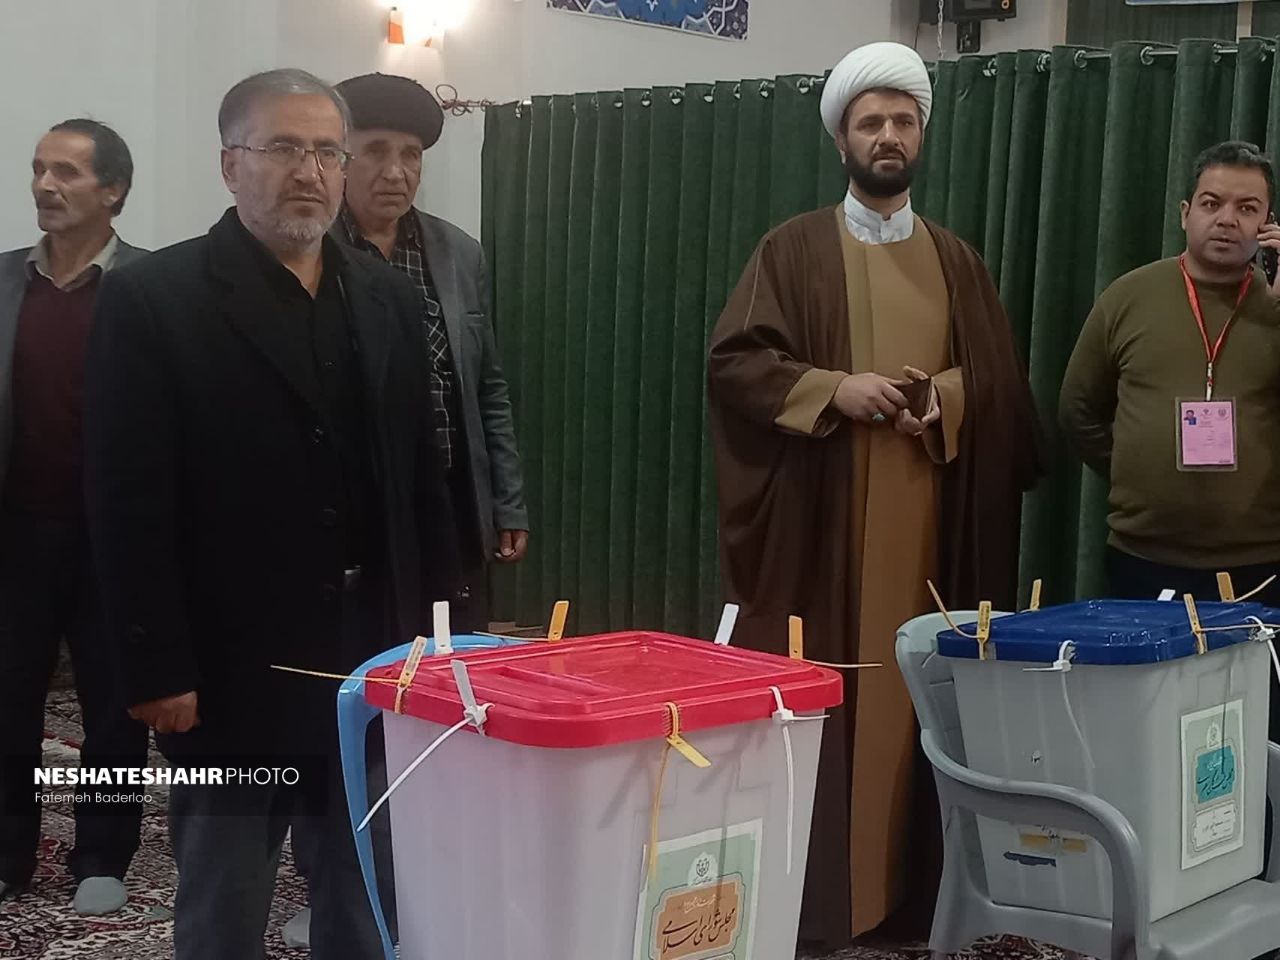 حضور در انتخابات، حرکتی محکم و قدمی راسخ و استوار در مسیر شکوفایی جمهوری اسلامی است